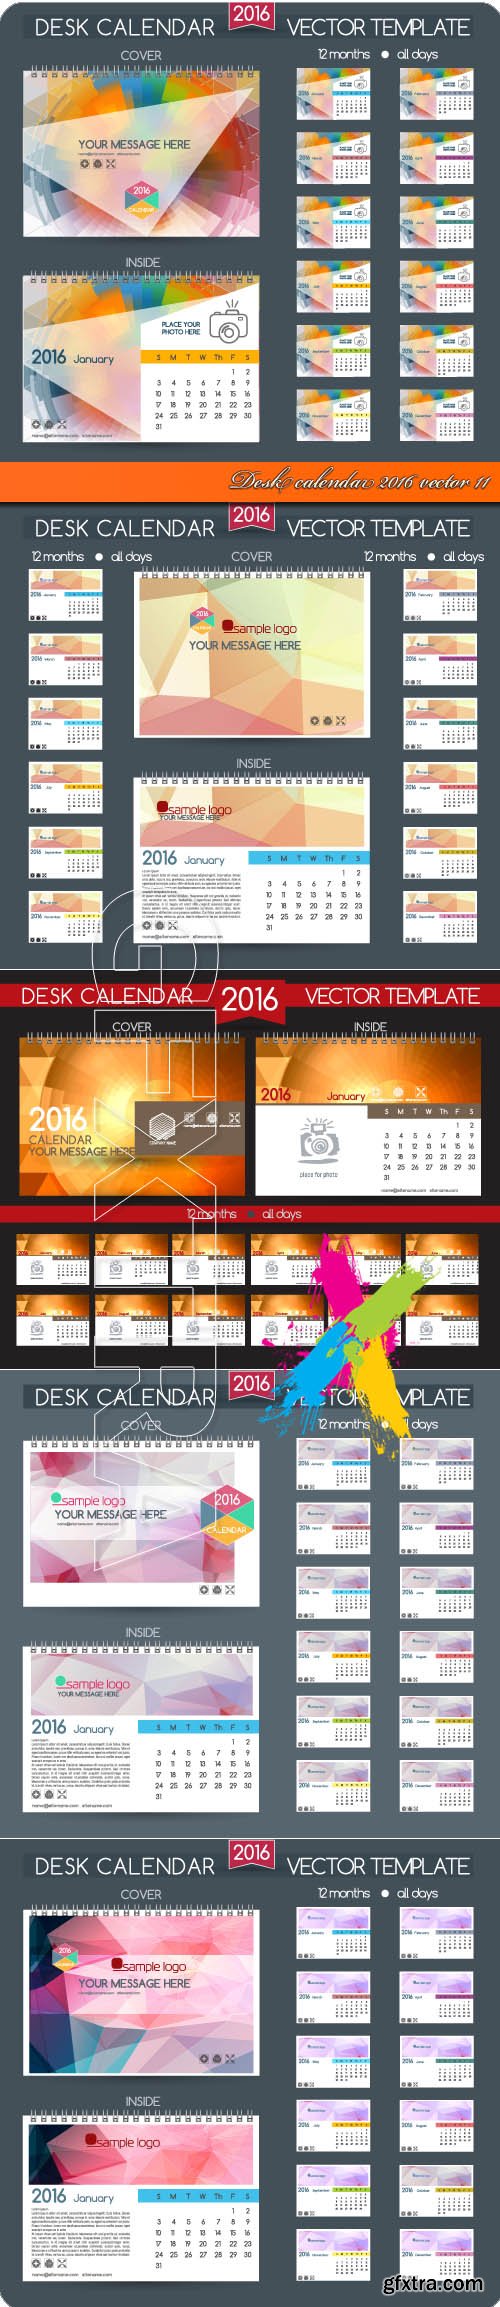 Desk calendar 2016 vector 11